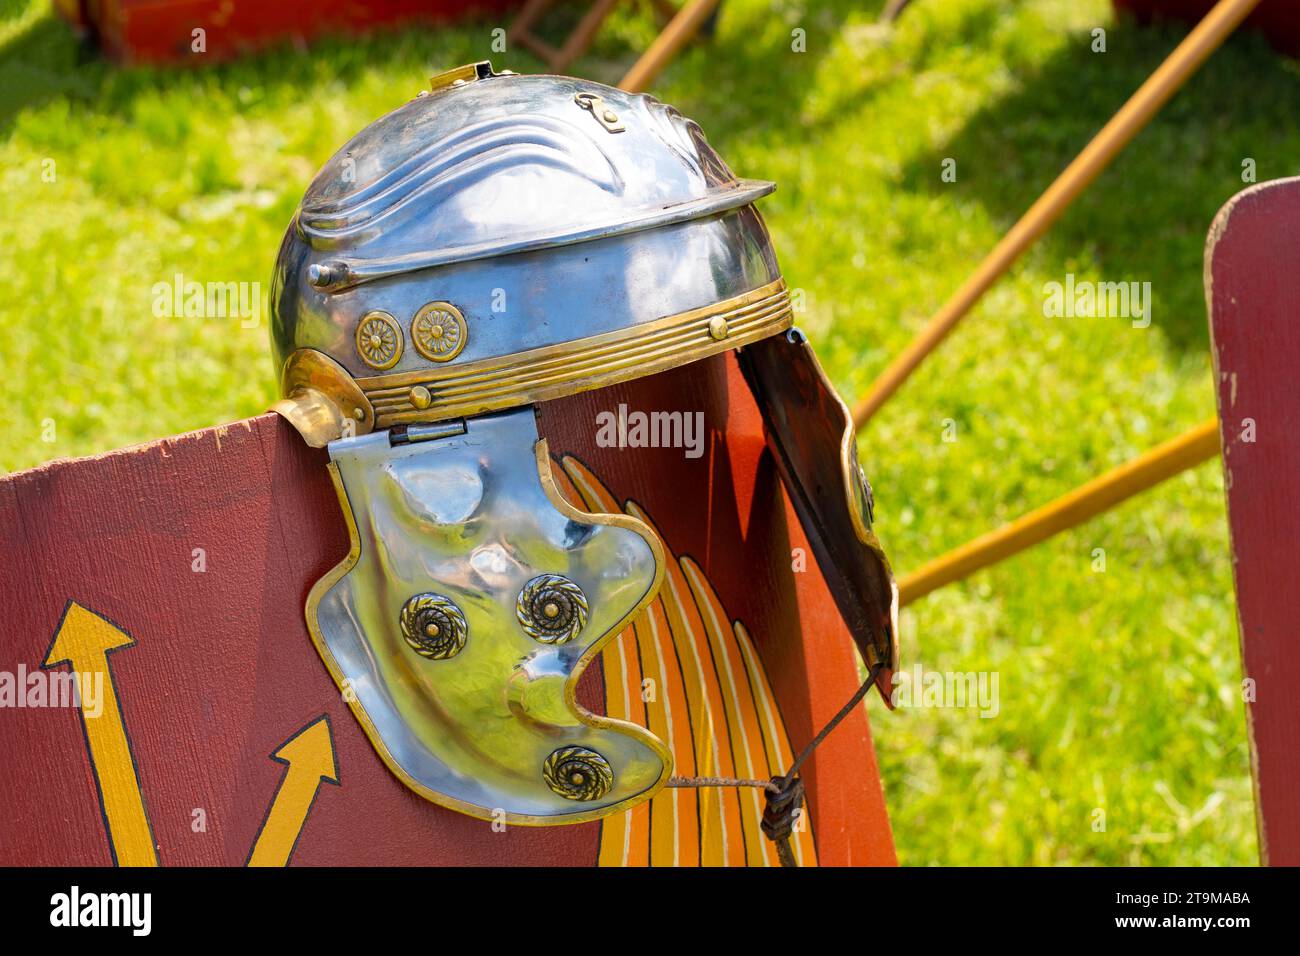 Ancient Roman legionary helmet on a red legionary shield Stock Photo